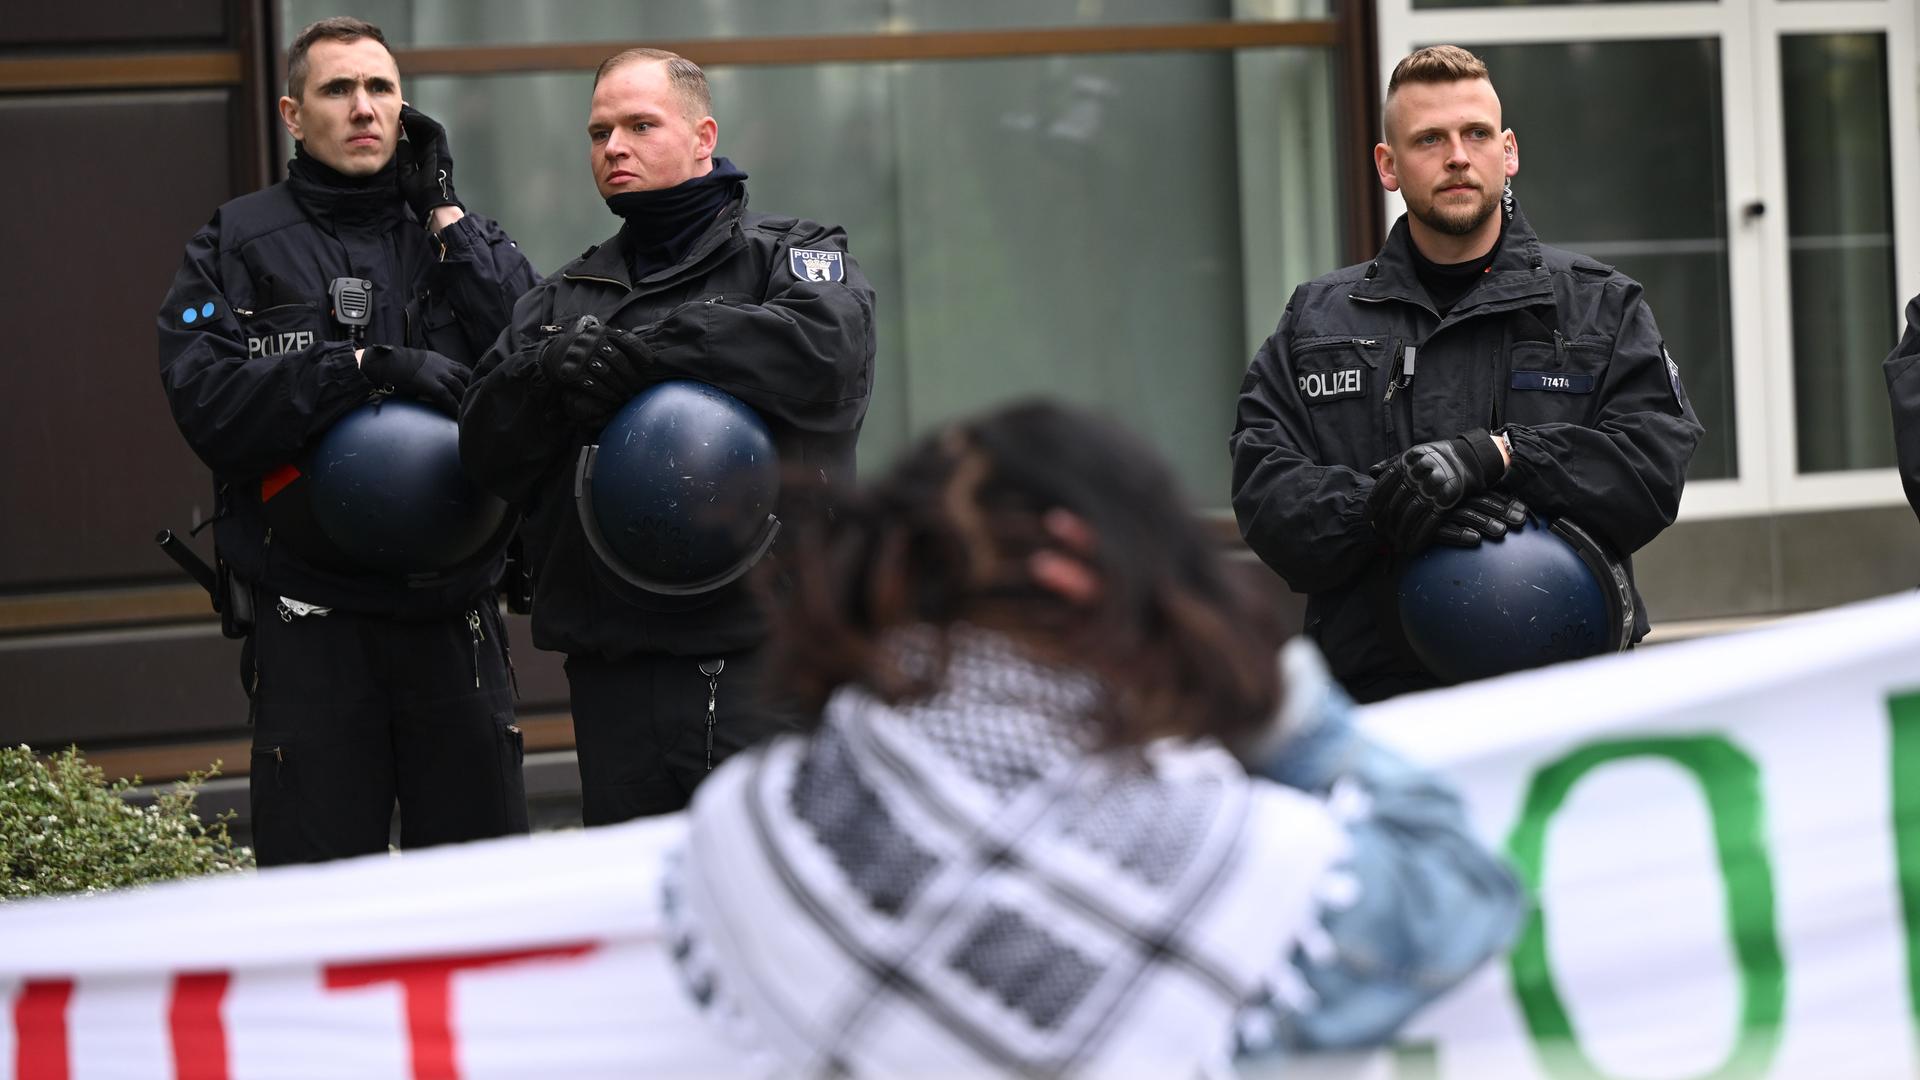 Teilnehmer stehen während einer pro-palästinensischen Demonstration auf dem Theaterhof der Freien Universität Berlin in der Nähe von Polizeibeamten. Im Hintergrund sind drei Polizisten, im Vordergrund eine Demonstrationsteilnehmende.